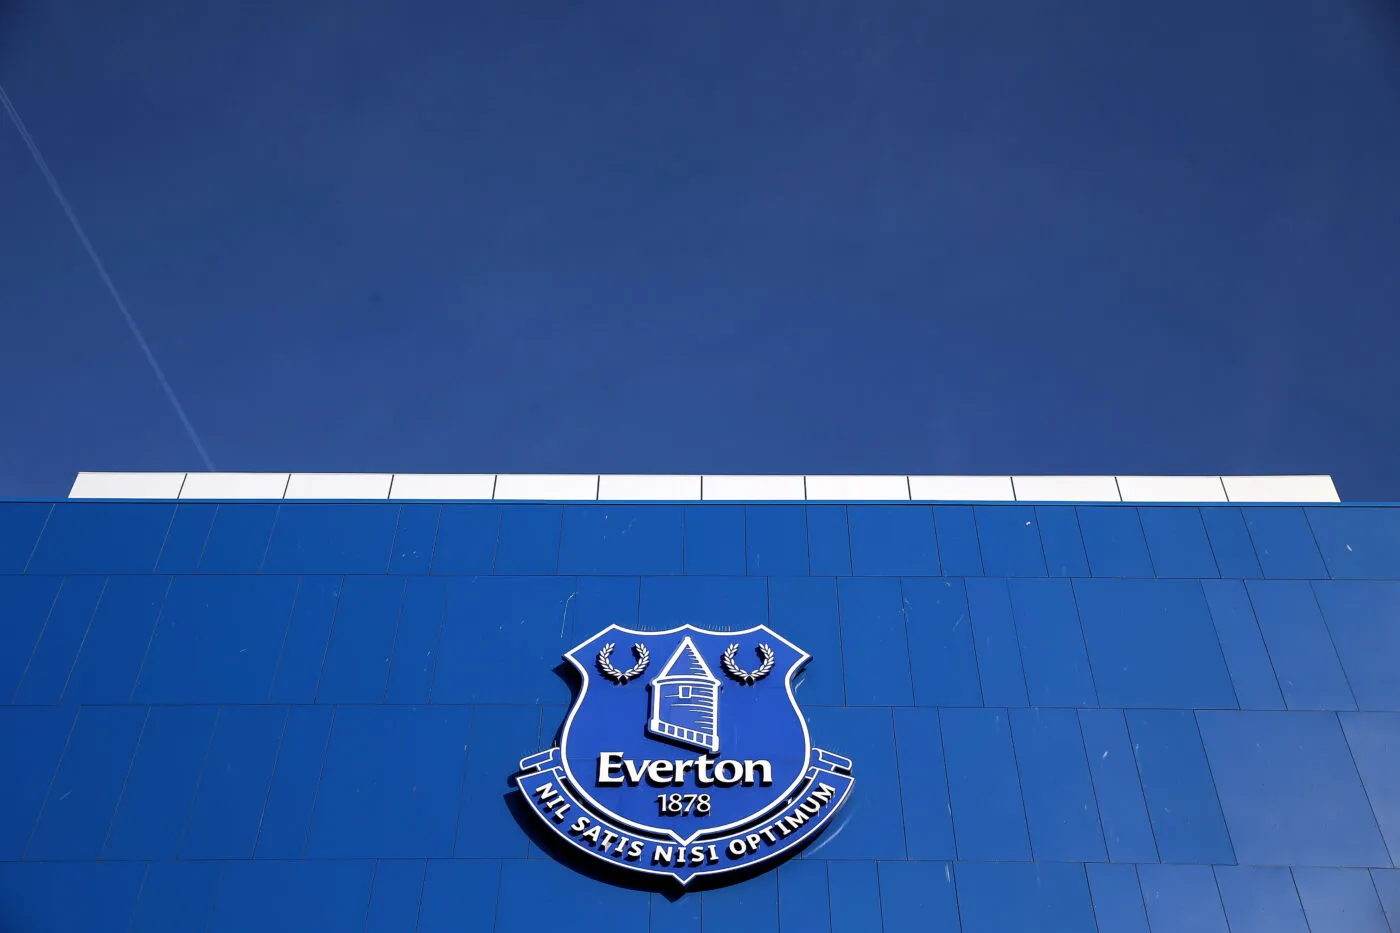 Prêt à racheter Everton, le propriétaire du Red Star, 777 Partners, inquiète le gouvernement britannique